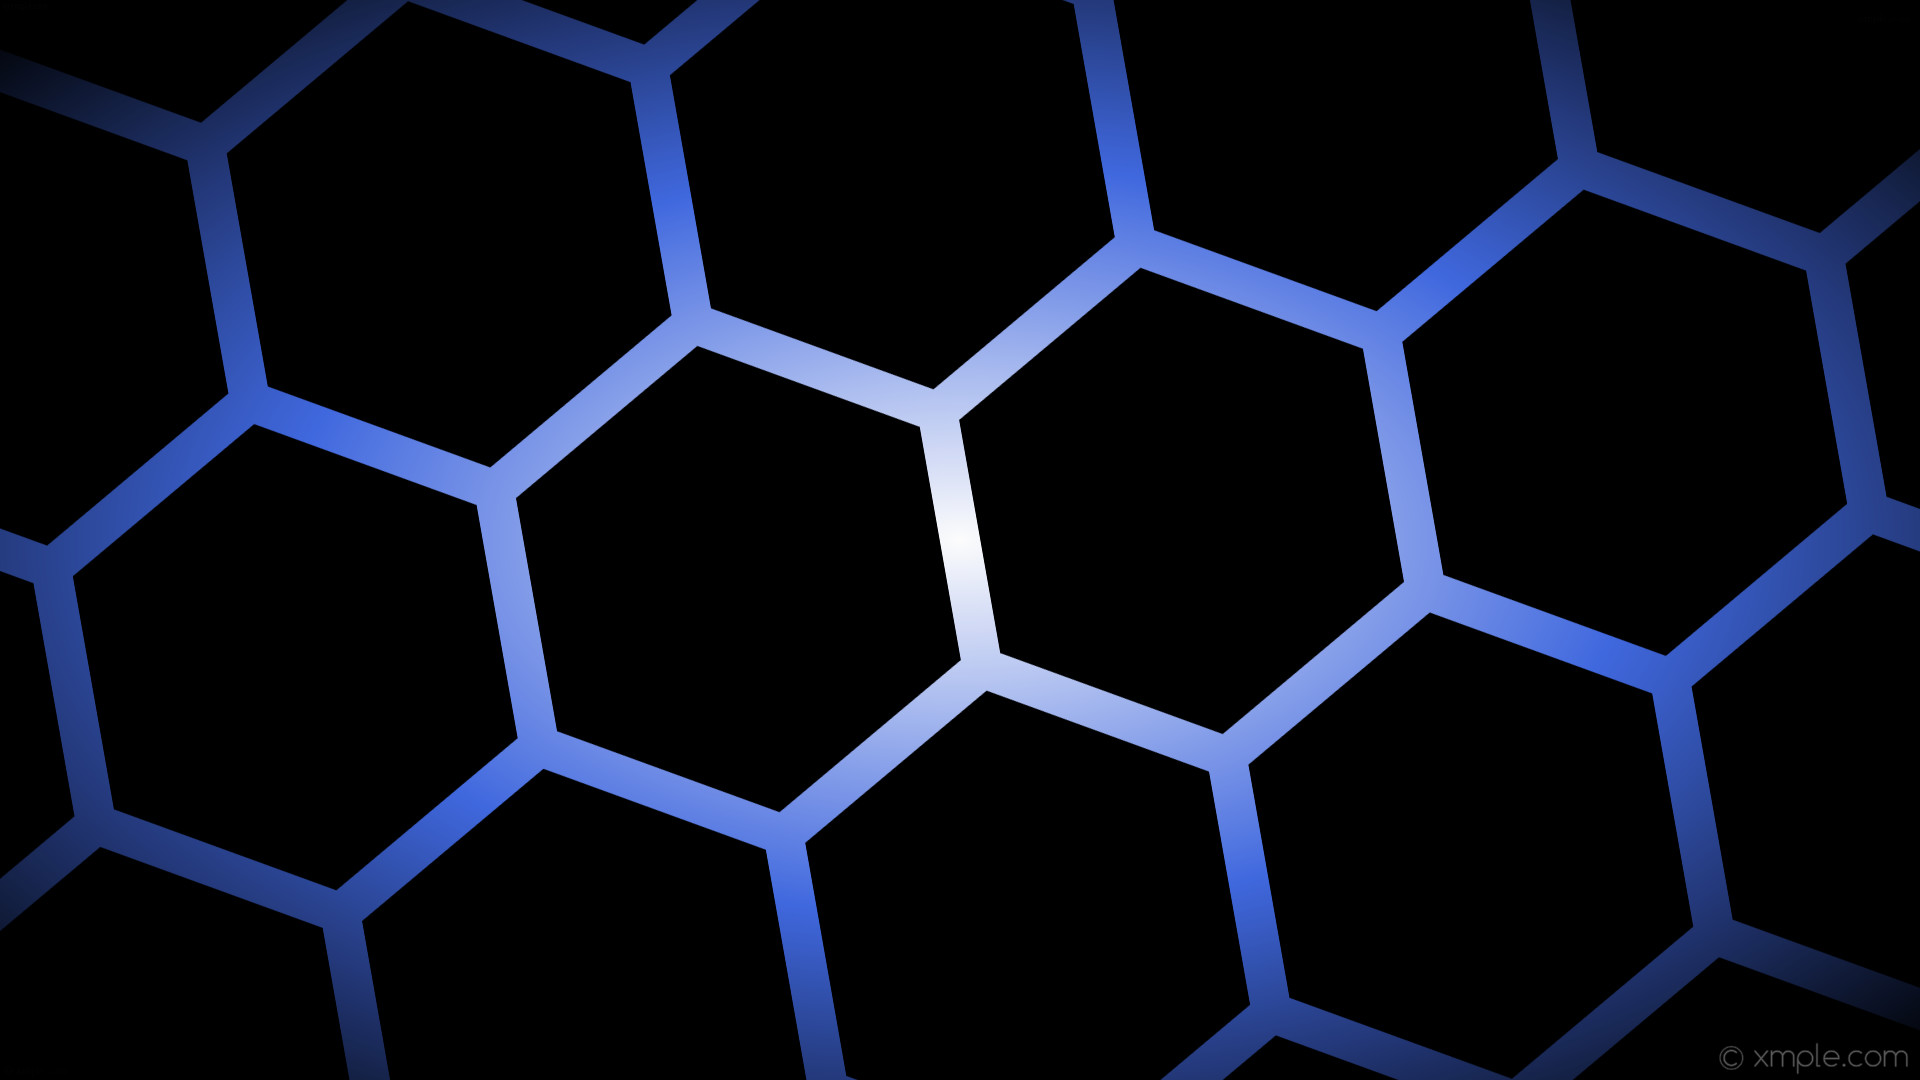 1920x1080 wallpaper white glow hexagon gradient blue black royal blue #000000 #ffffff  #4169e1 diagonal